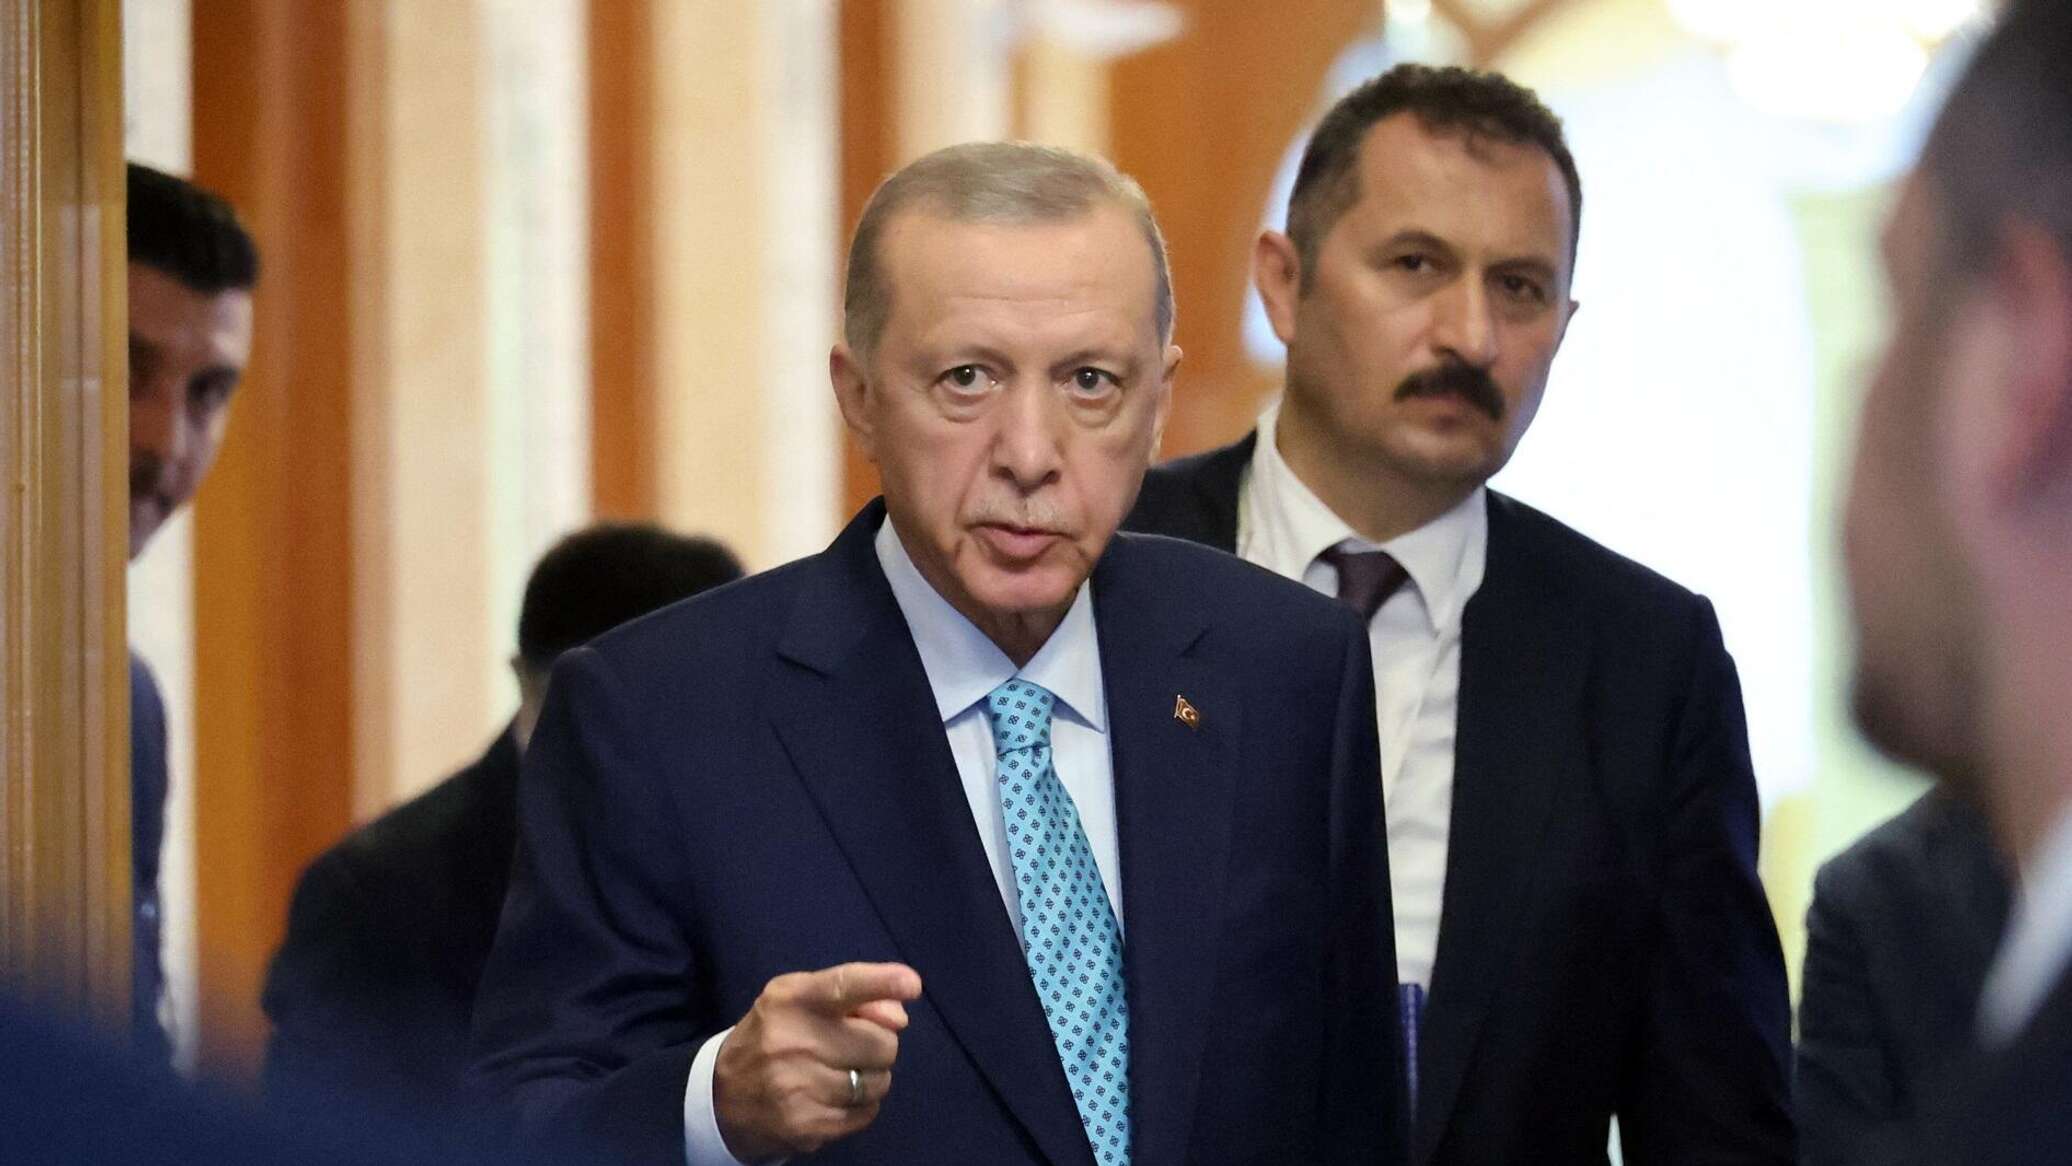 أردوغان يصف الوضع في الشرق الأوسط بأنه "جنون يشجعه الغرب"